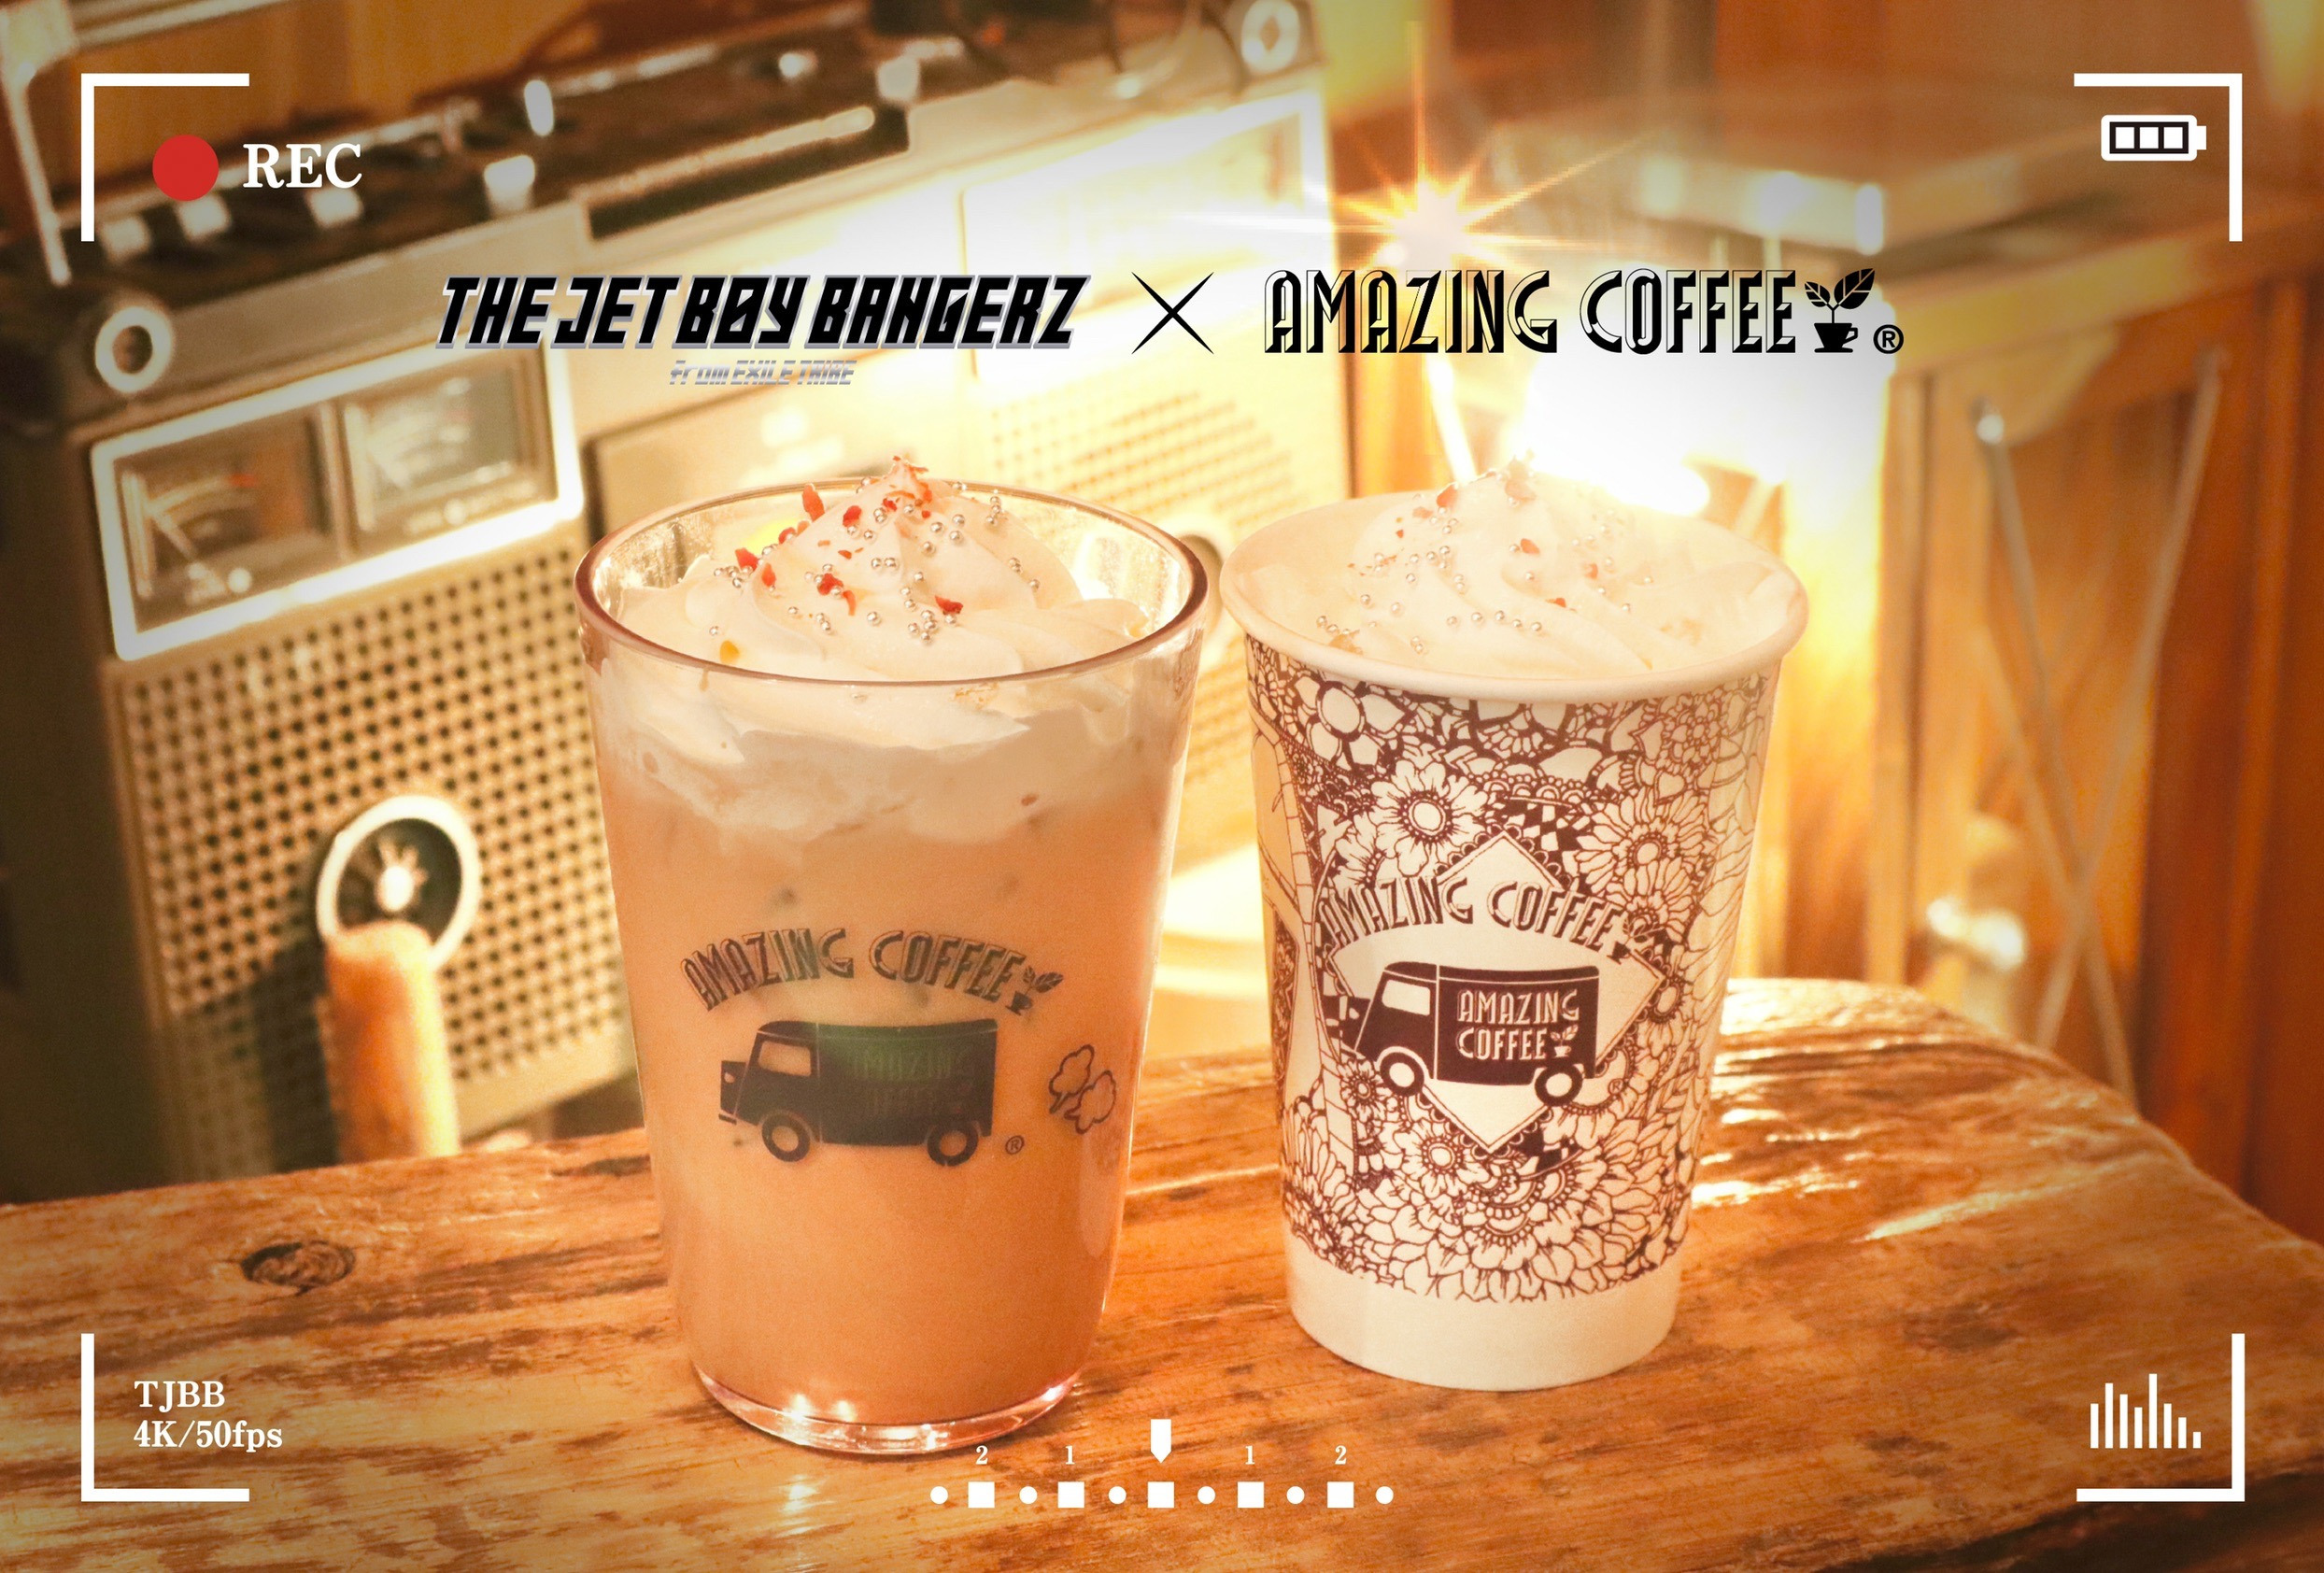 ✨【1月27日(土)START!!】THE JET BOY BANGERZ×AMAZING COFFEE スペシャルコラボレーション決定☕